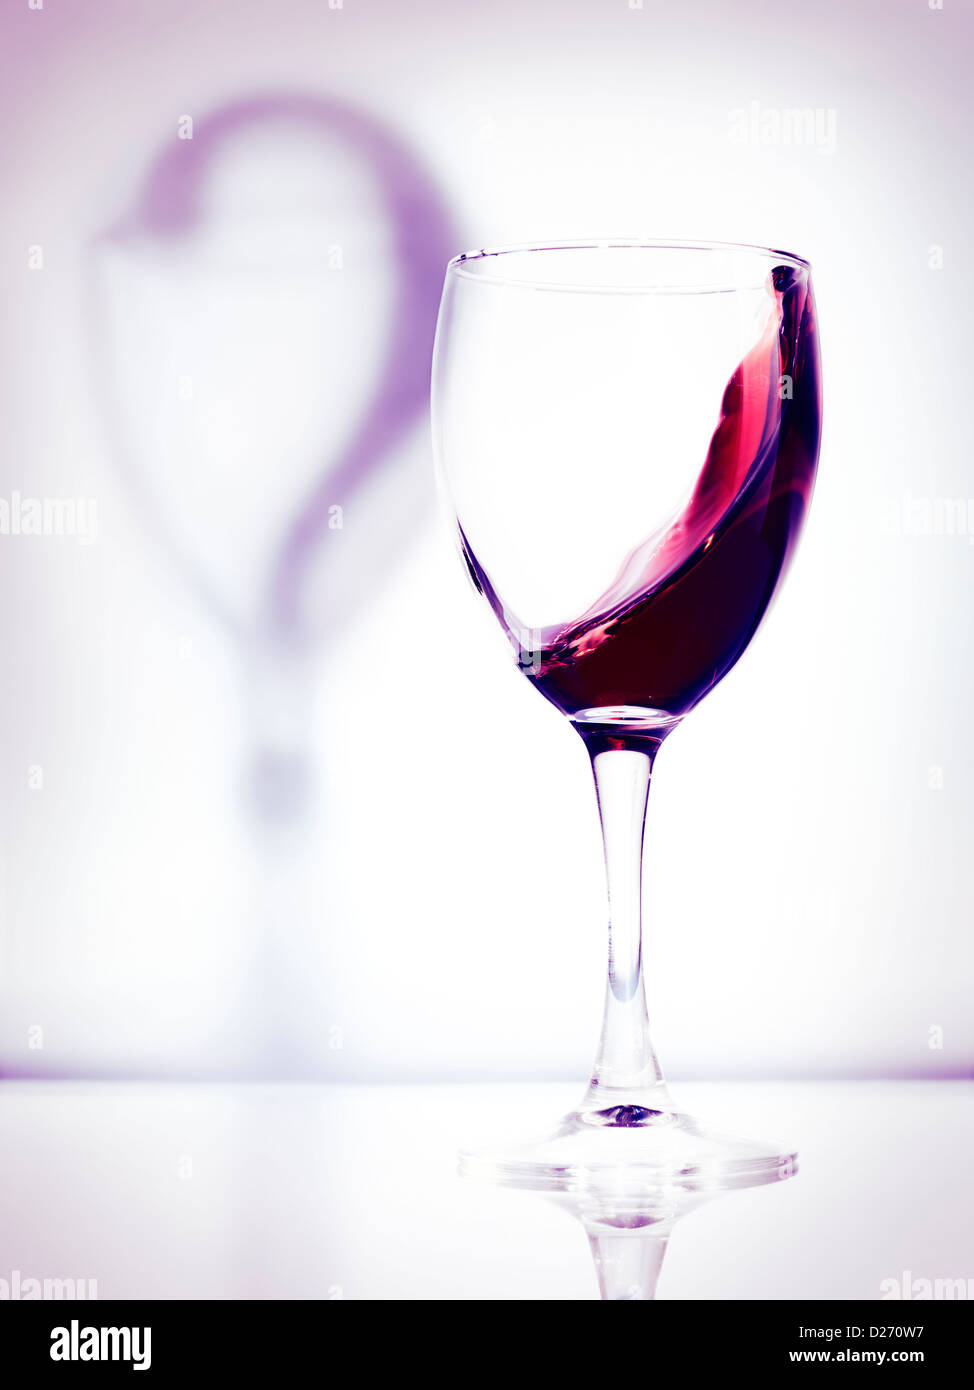 Vino rosso in un bicchiere e un punto interrogativo ombra artistico foto concettuale isolato bianco su sfondo viola Foto Stock